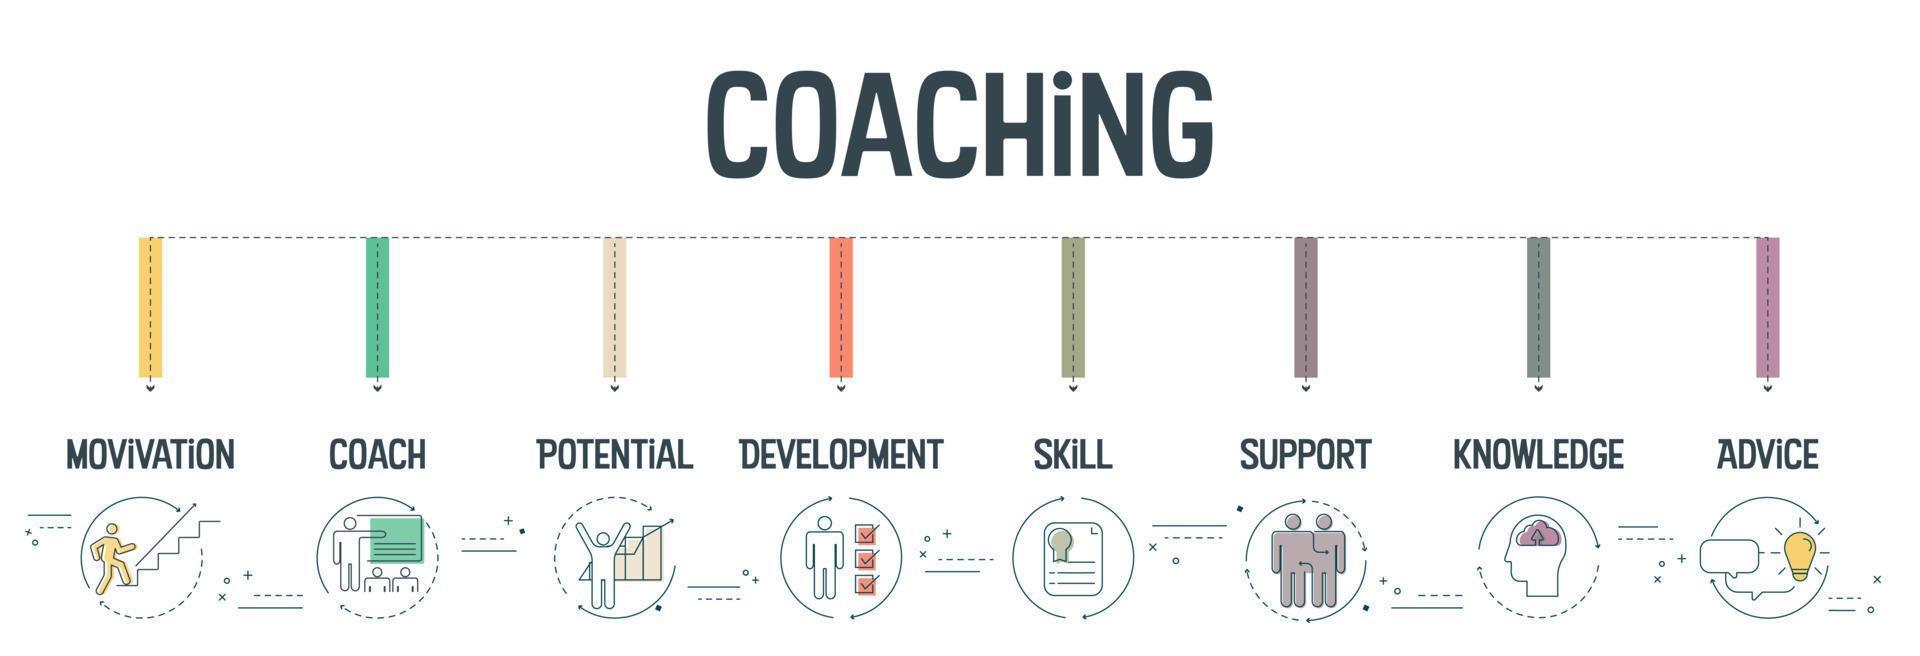 il concetto di banner di coaching ha 8 passaggi da analizzare come motivazione, coach, potenziale, sviluppo, abilità, supporto, conoscenza e consulenza. infografica aziendale per la presentazione di diapositive o banner web. vettore. vettore